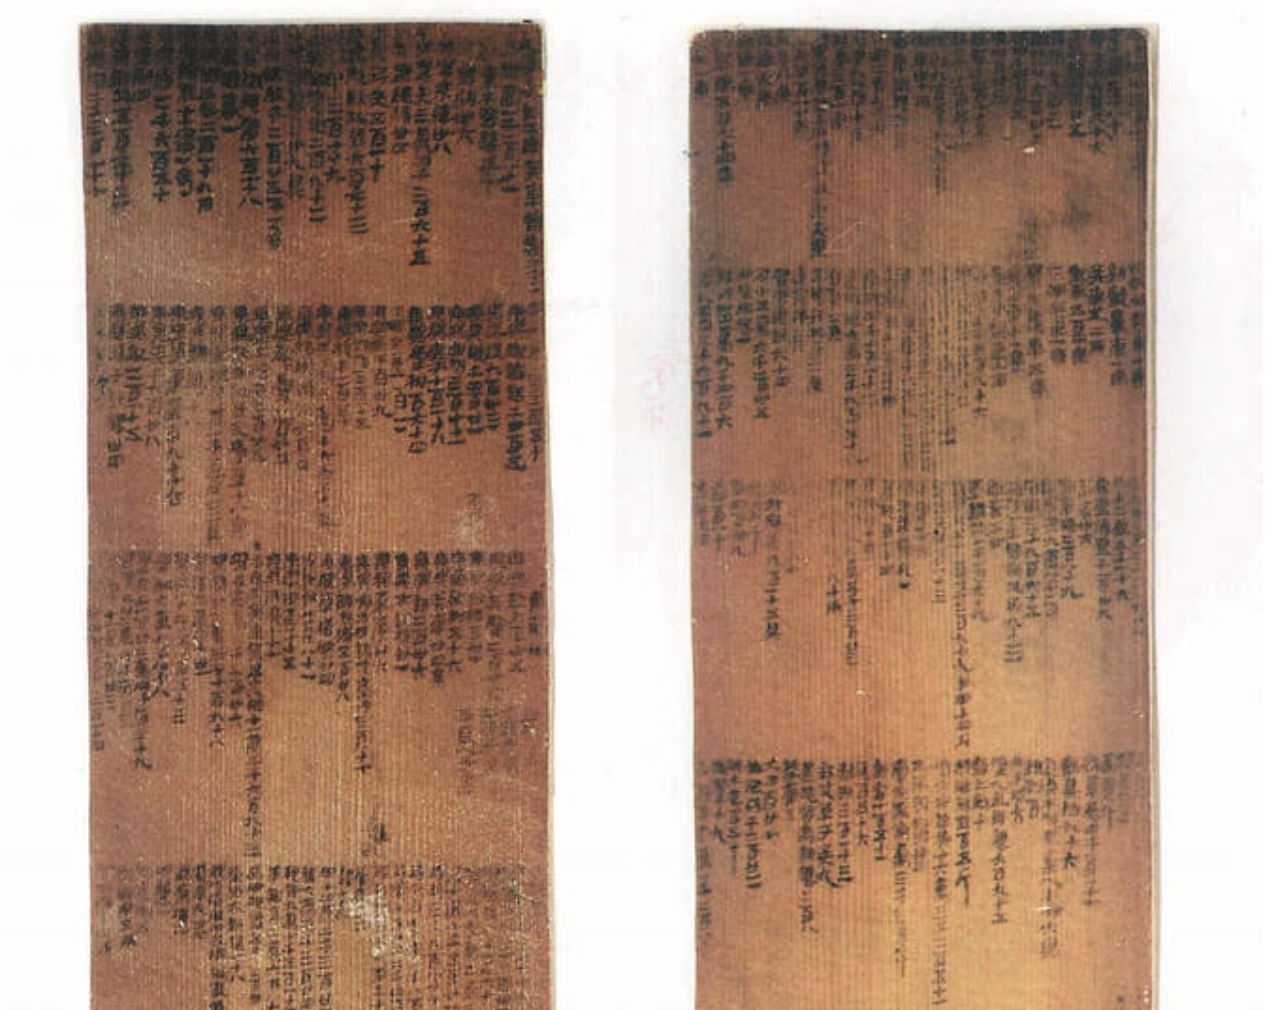 尹灣漢墓簡牘記錄兩千年前「絲路」交流 